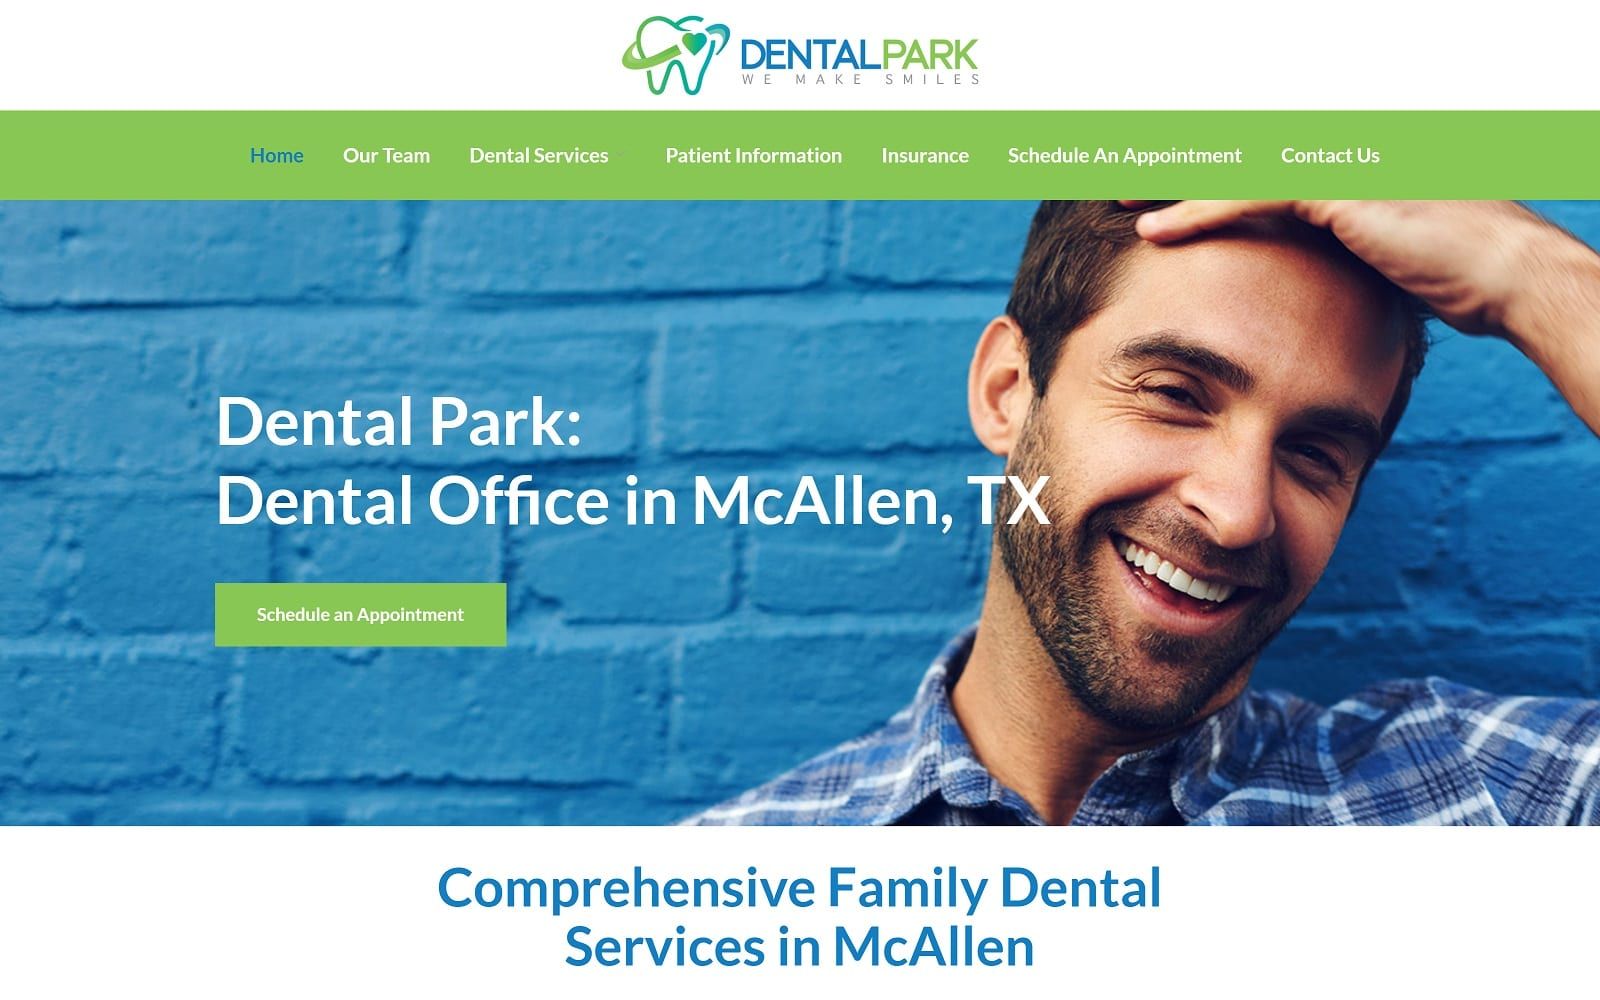 The screenshot of dental park dentalparkmcallen. Com website